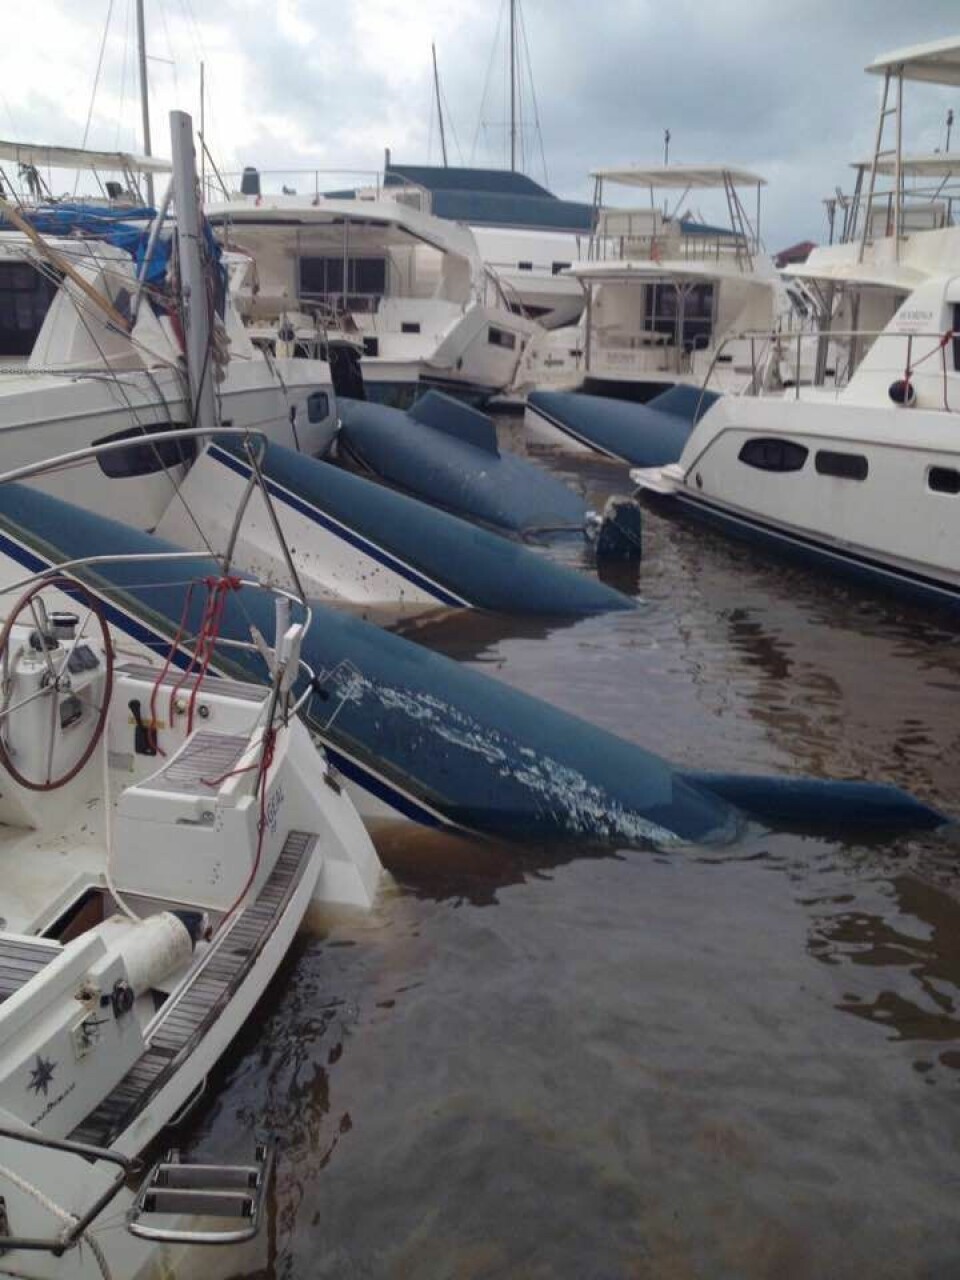 SKADER: Irma har knust 80 prosent av båtene, men bransjen skal opp på beina igjen.